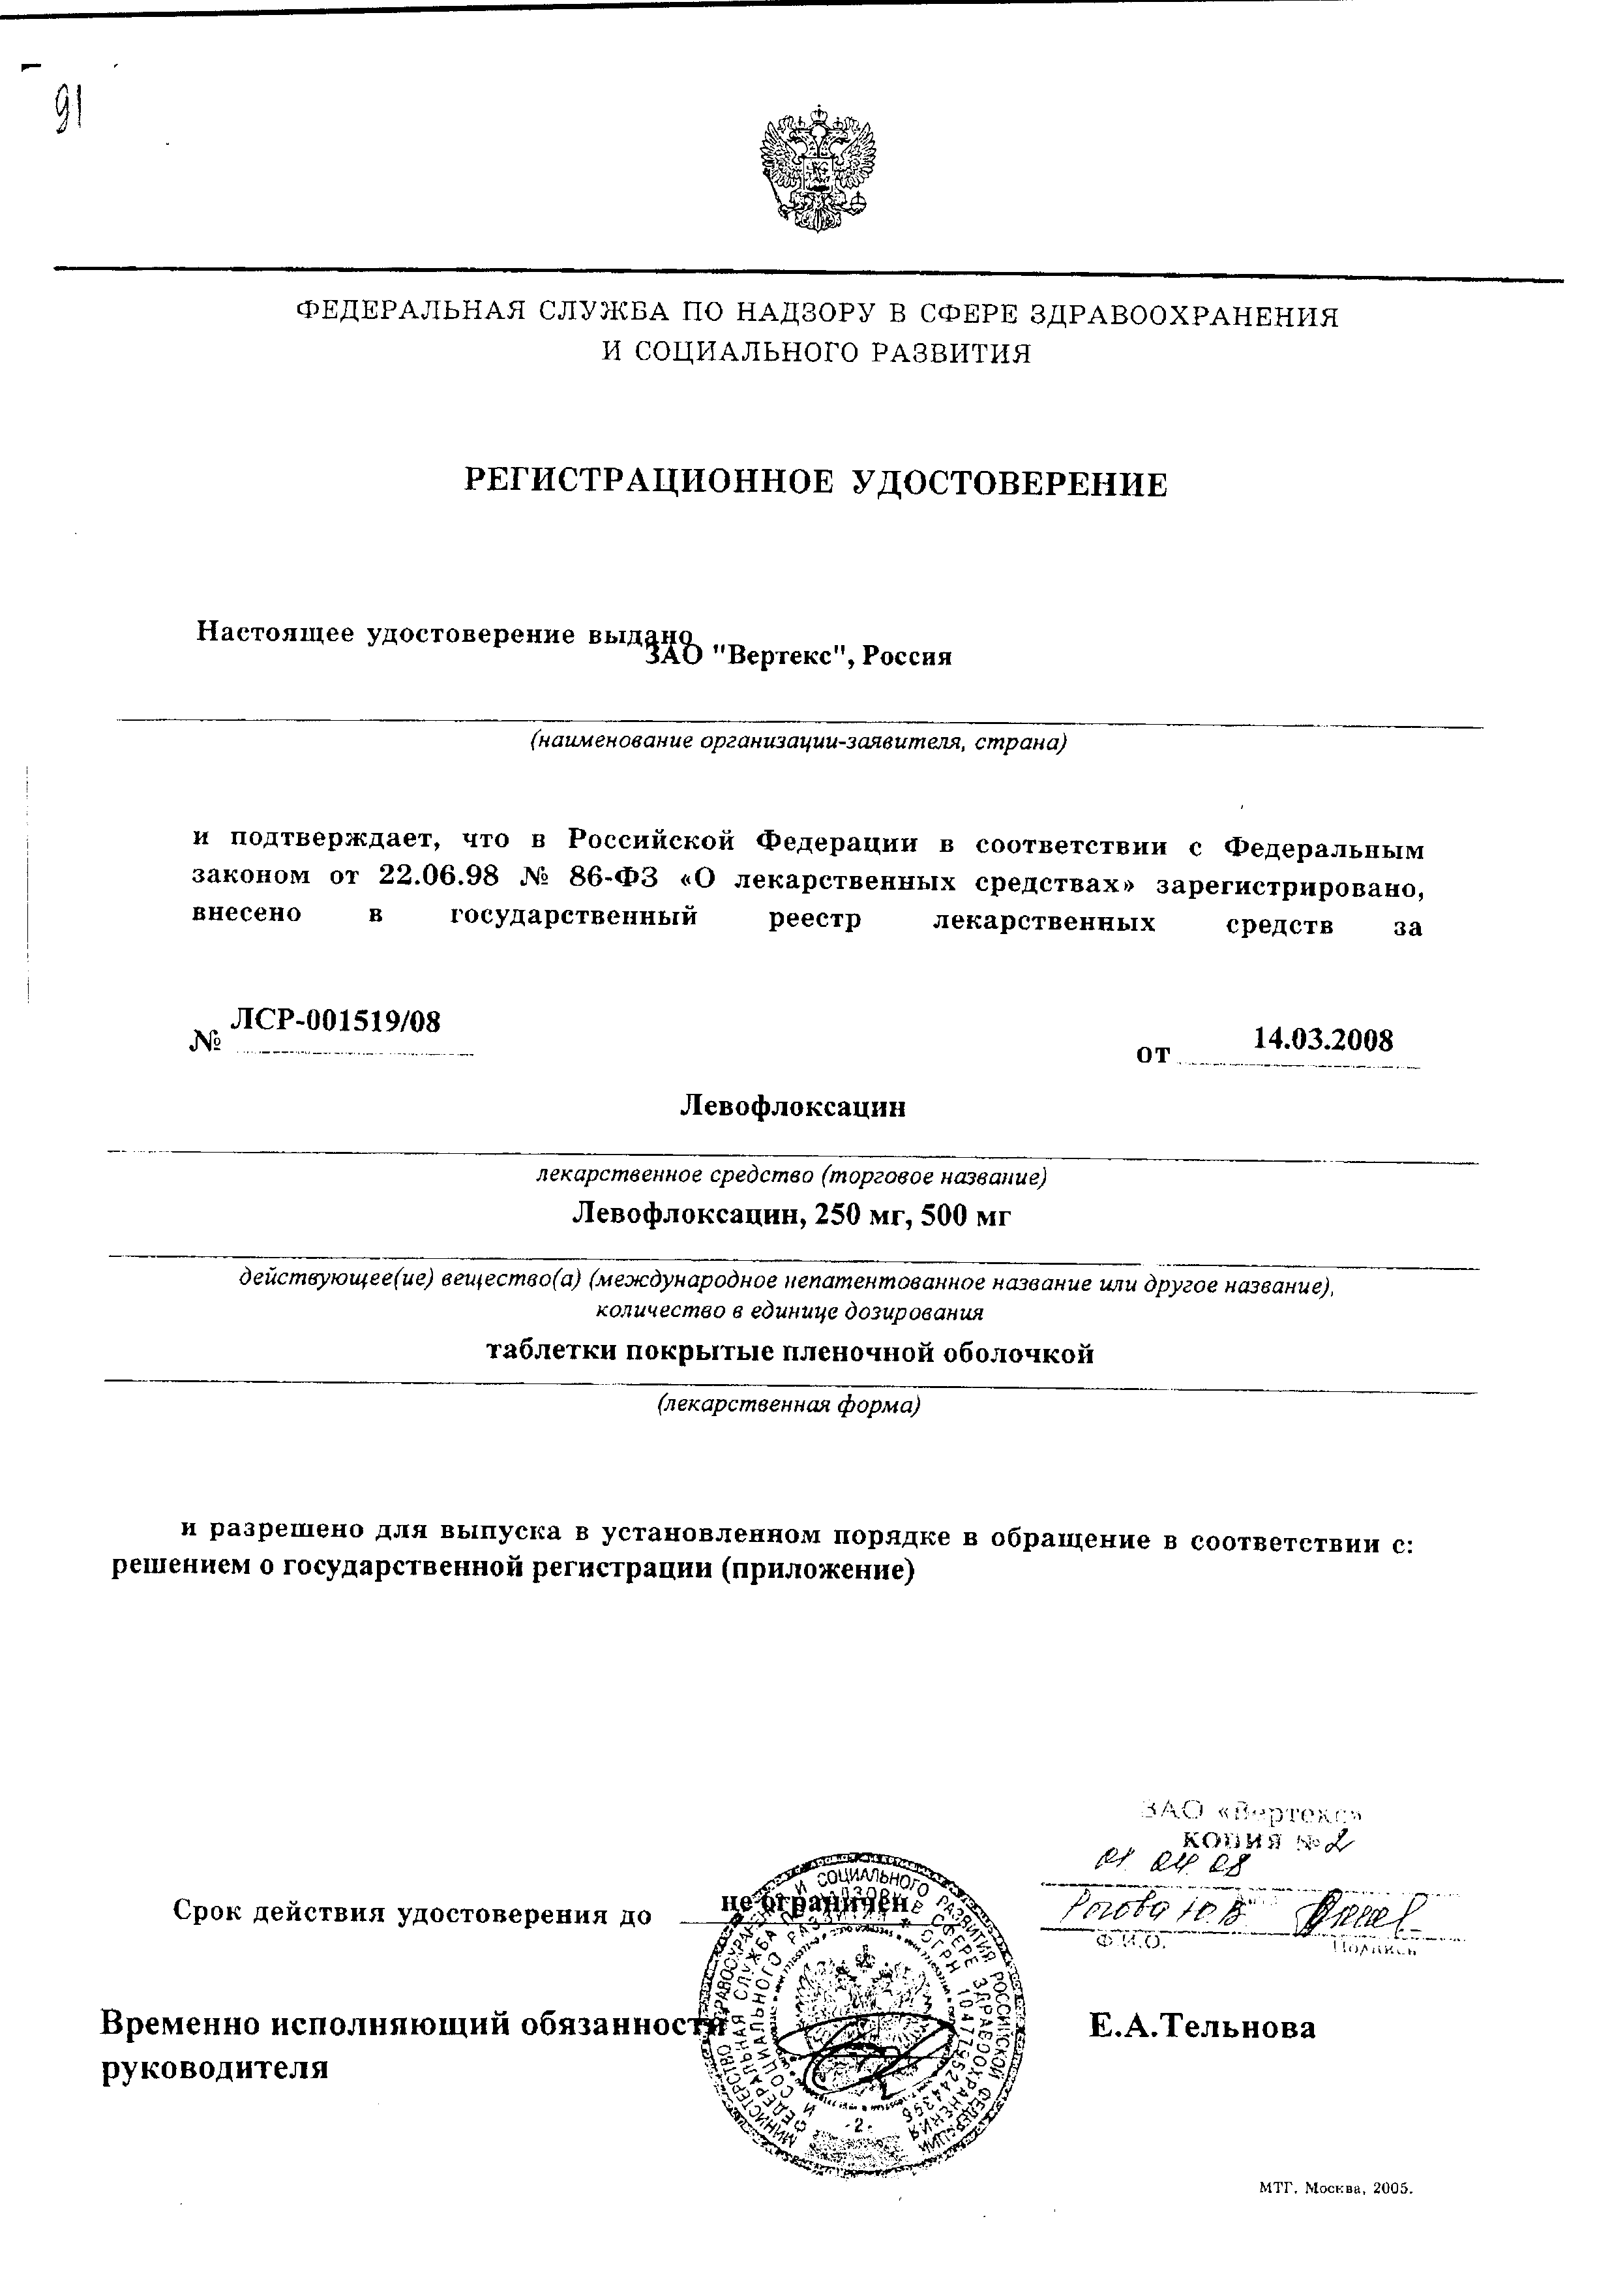 Левофлоксацин сертификат